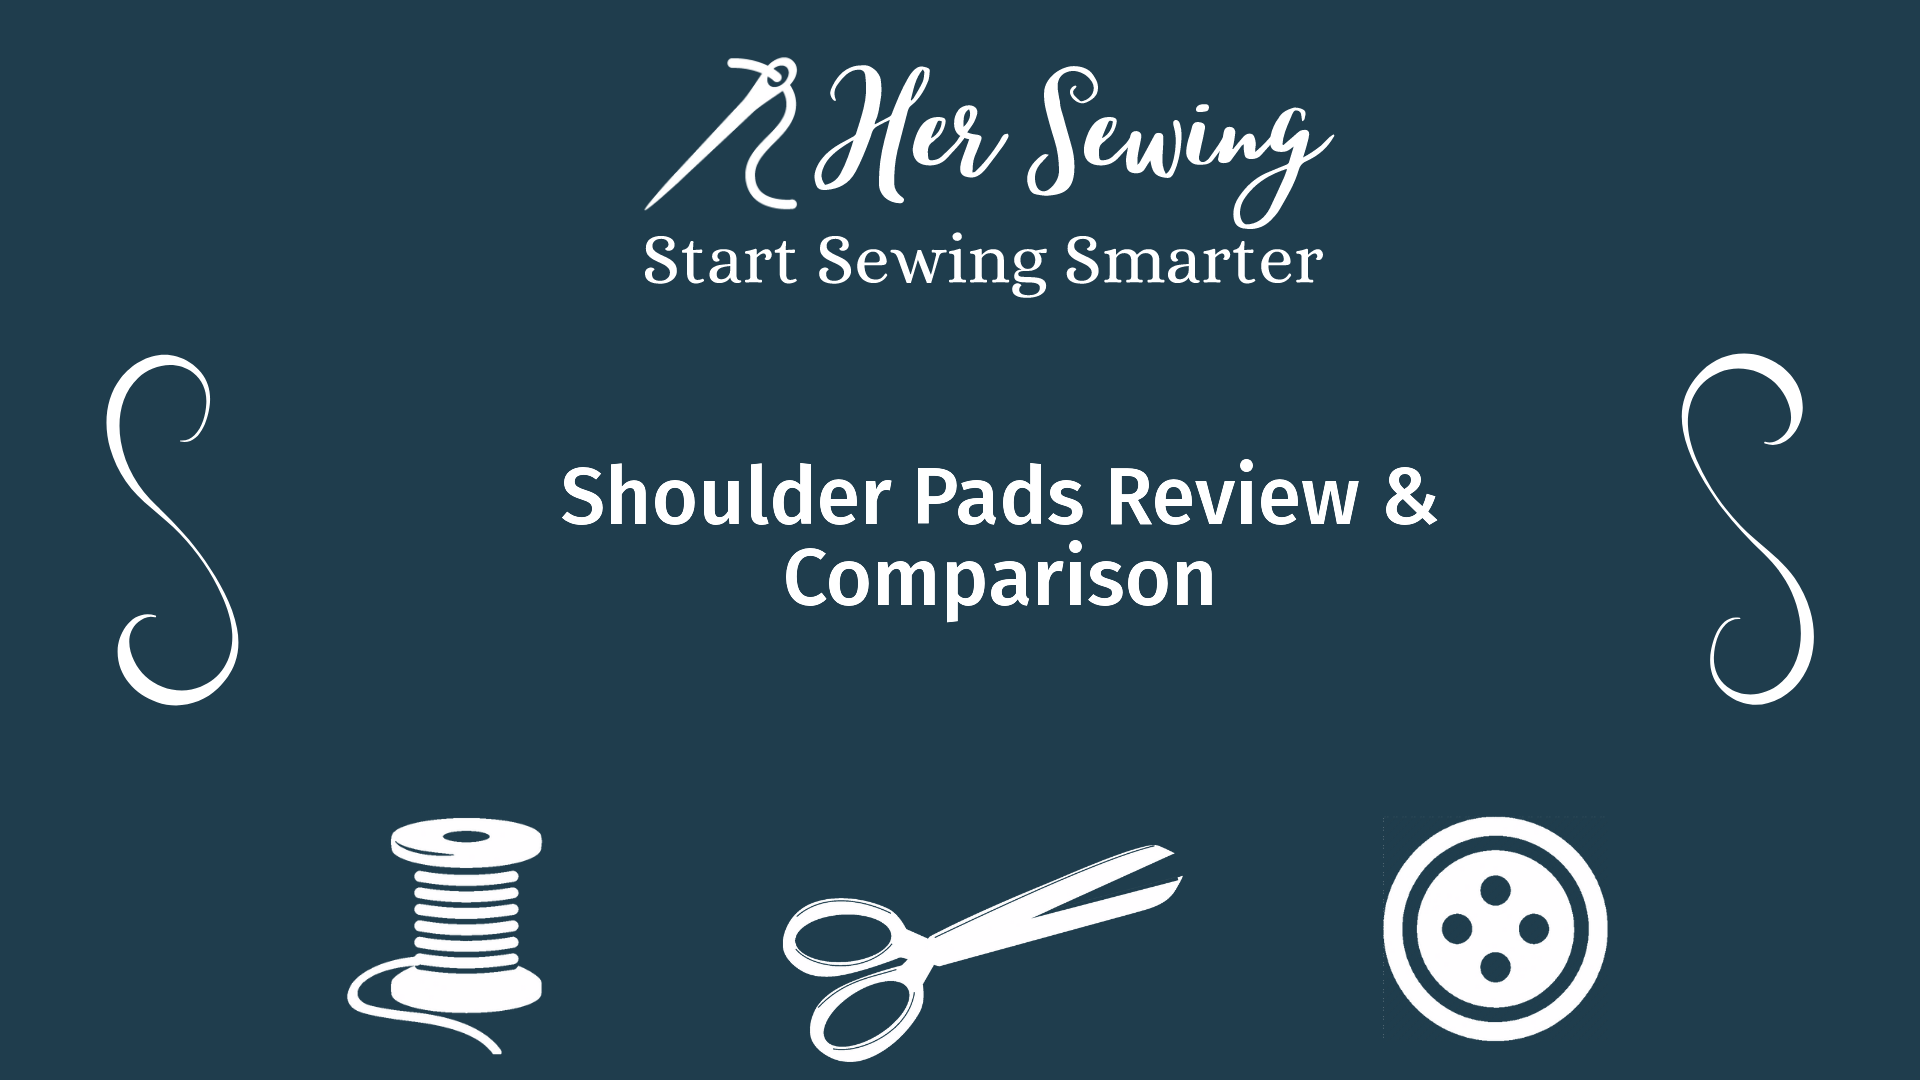 Shoulder Pads Review & Comparison